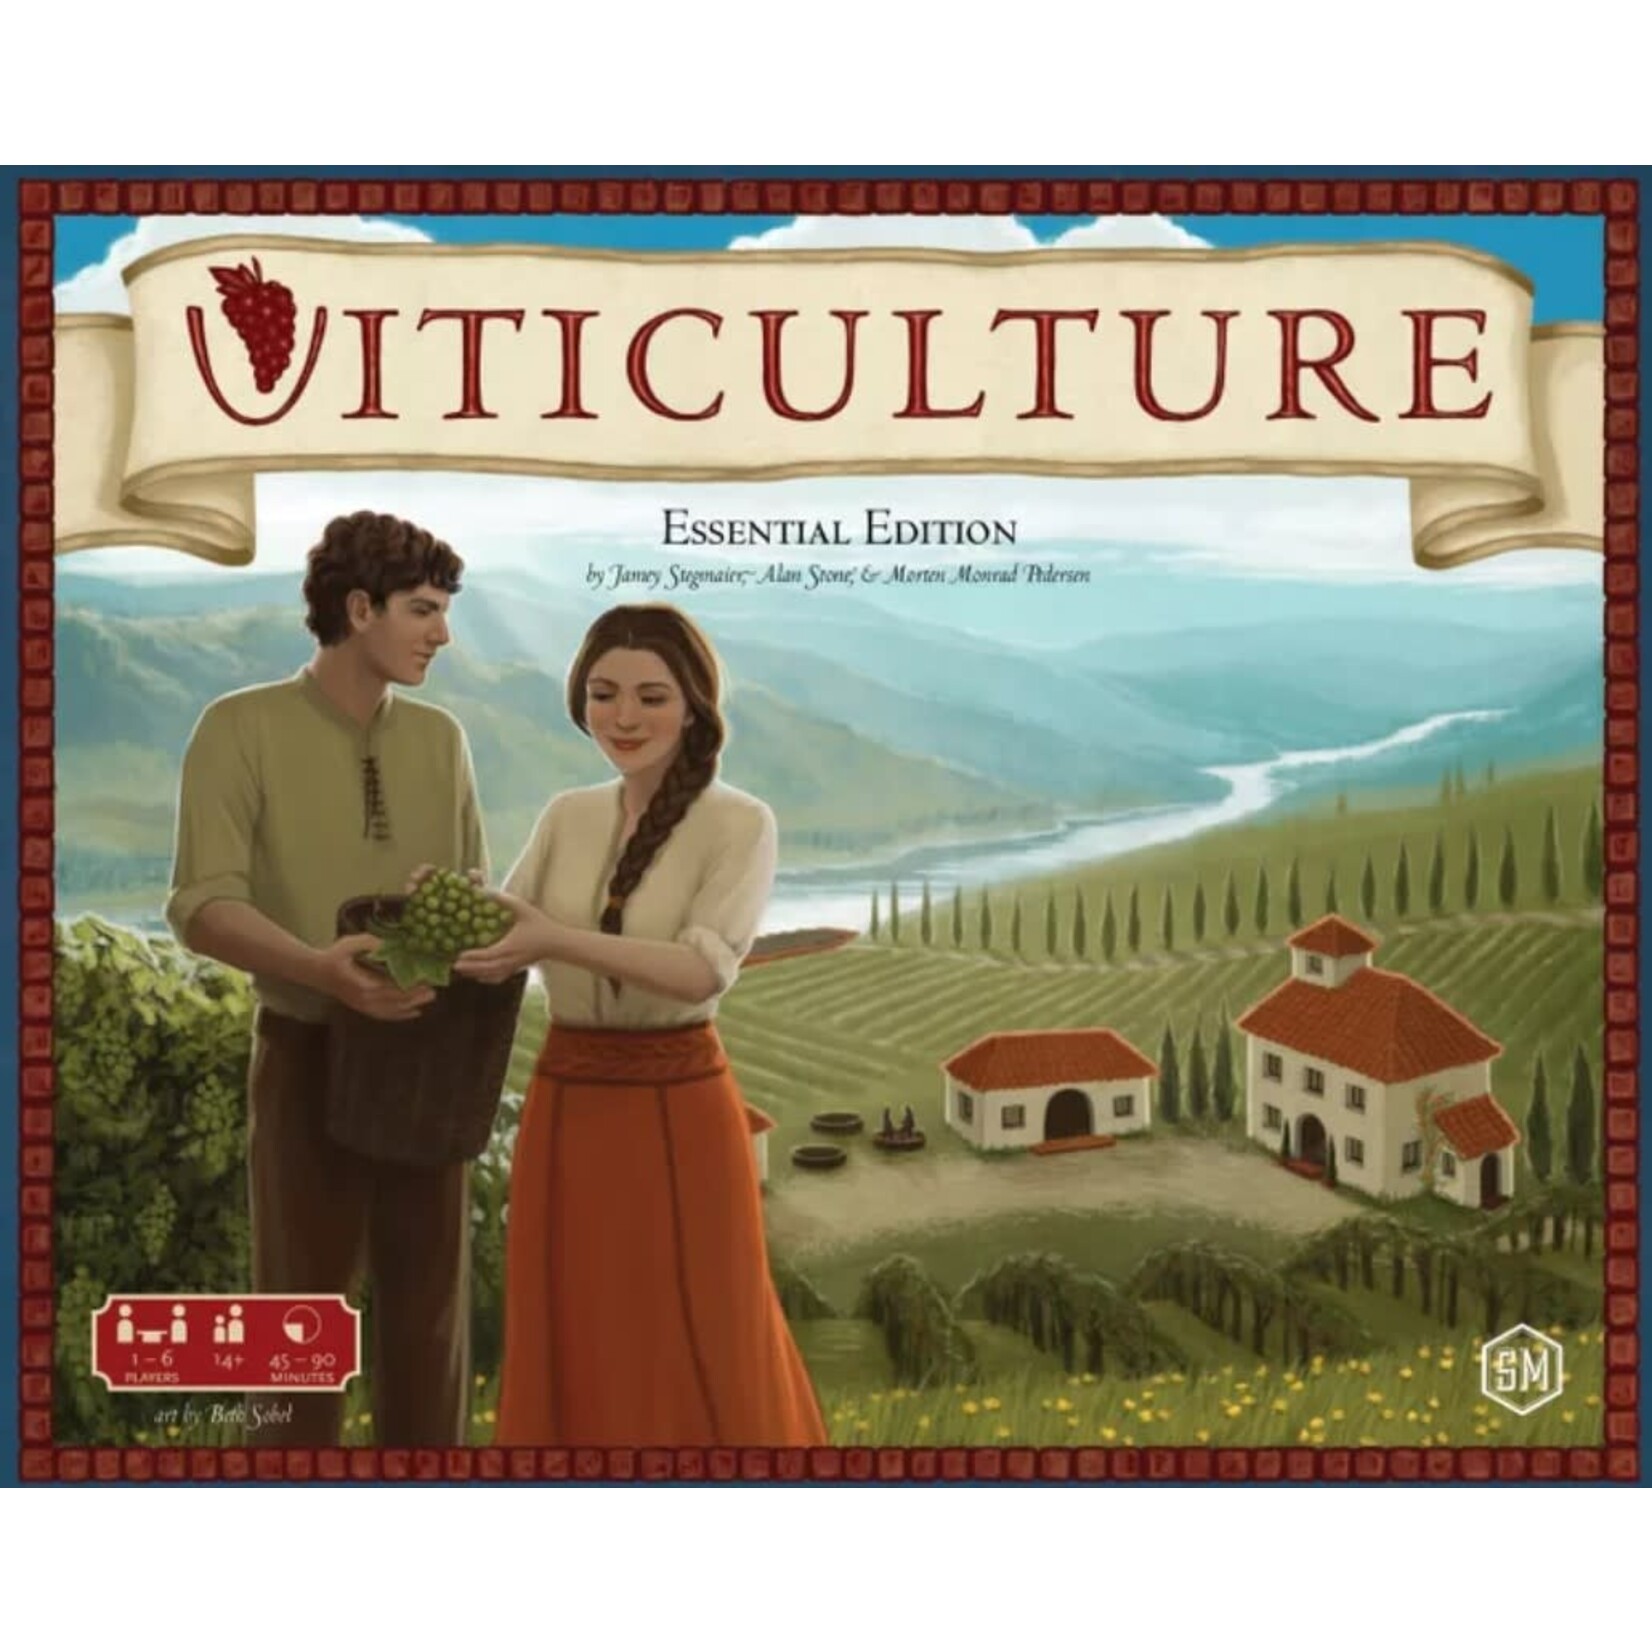 Cardboard League: 5/18/24 3pm: Viticulture